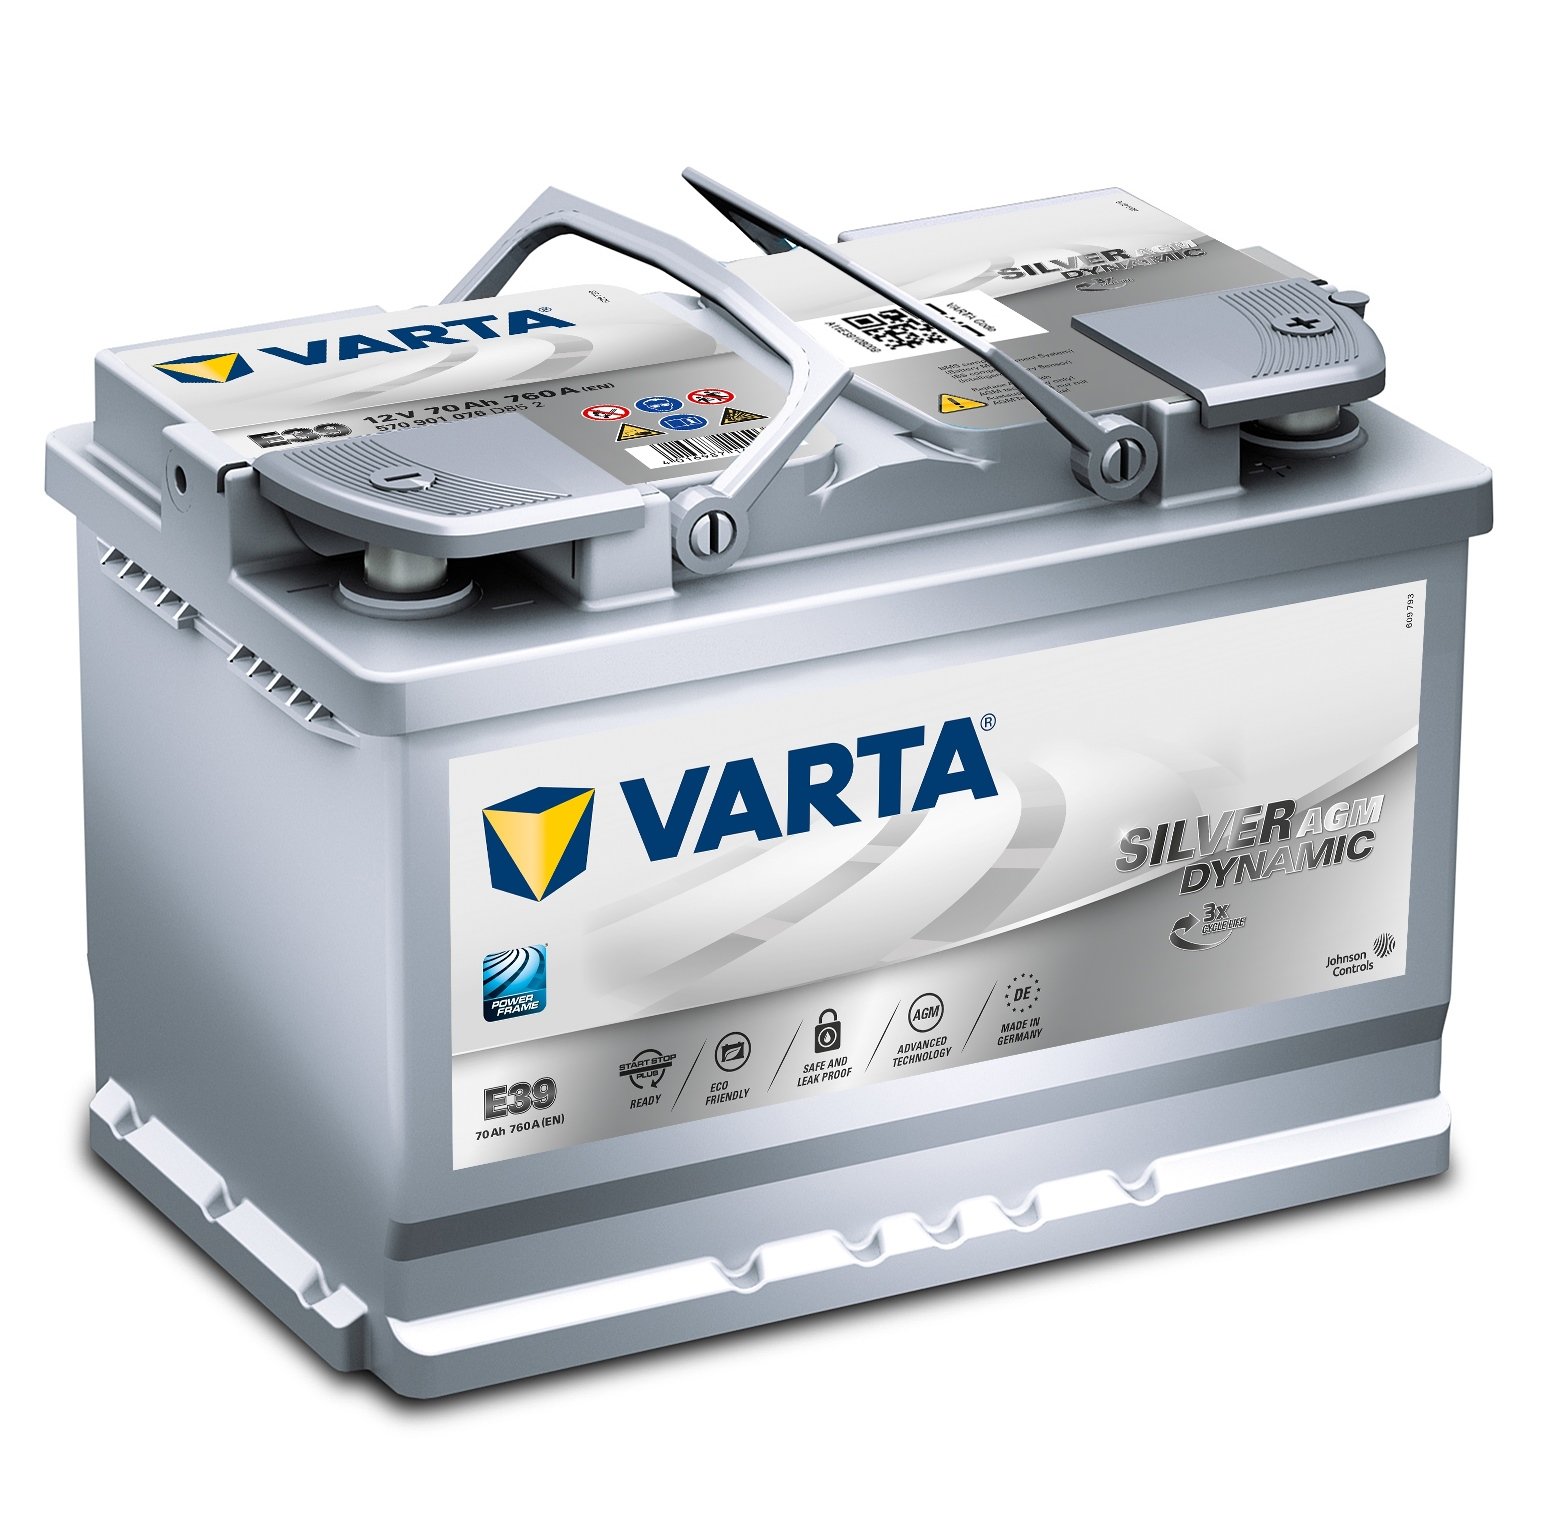 Varta 570901076b512 Batterie, 278 *175 * 190 mm von Varta